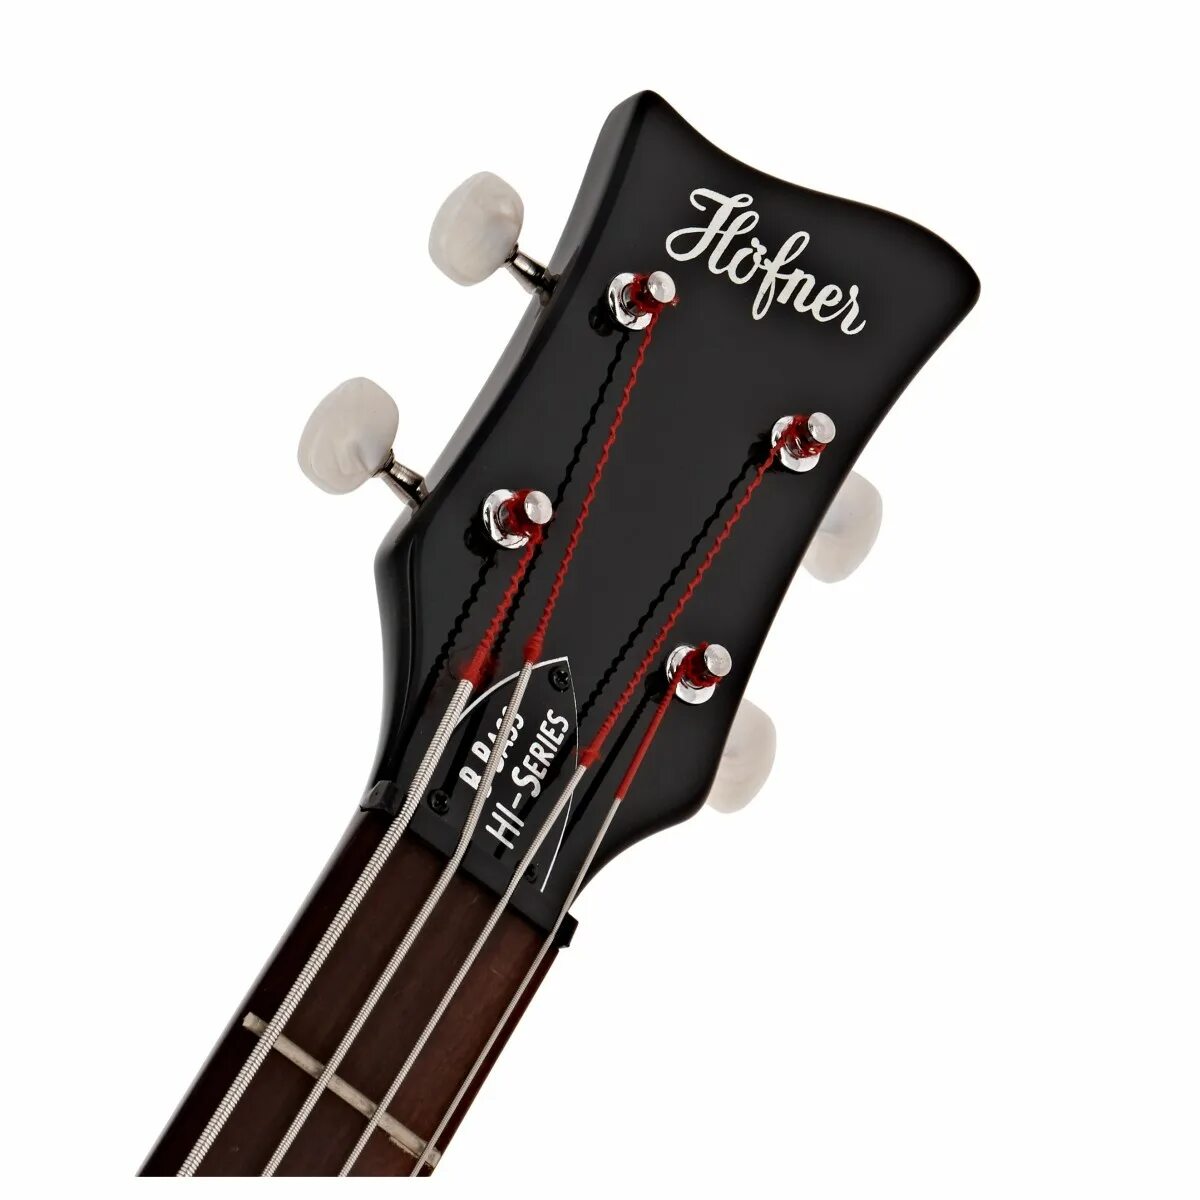 Hofner Violin Bass. Bass headstock. Чехол для Hofner Violin Bass. Martin d28 headstock. Violin bass